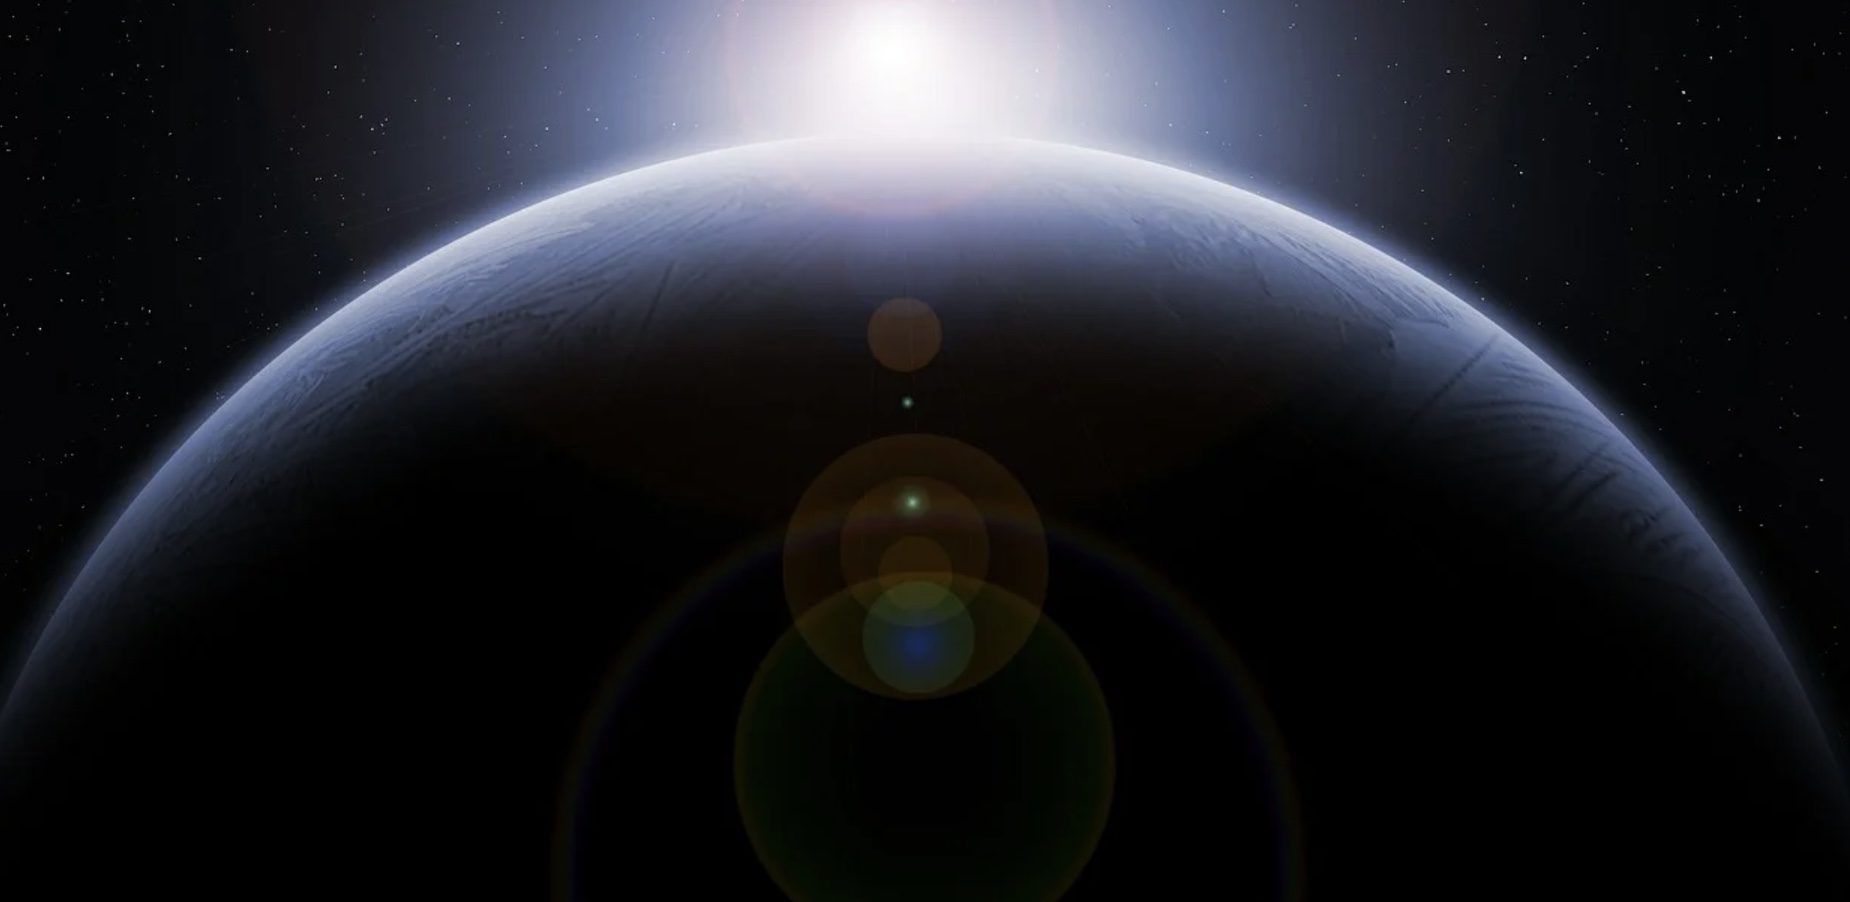 Unité astronomique : la distance entre la Terre et le Soleil est validée définitivement